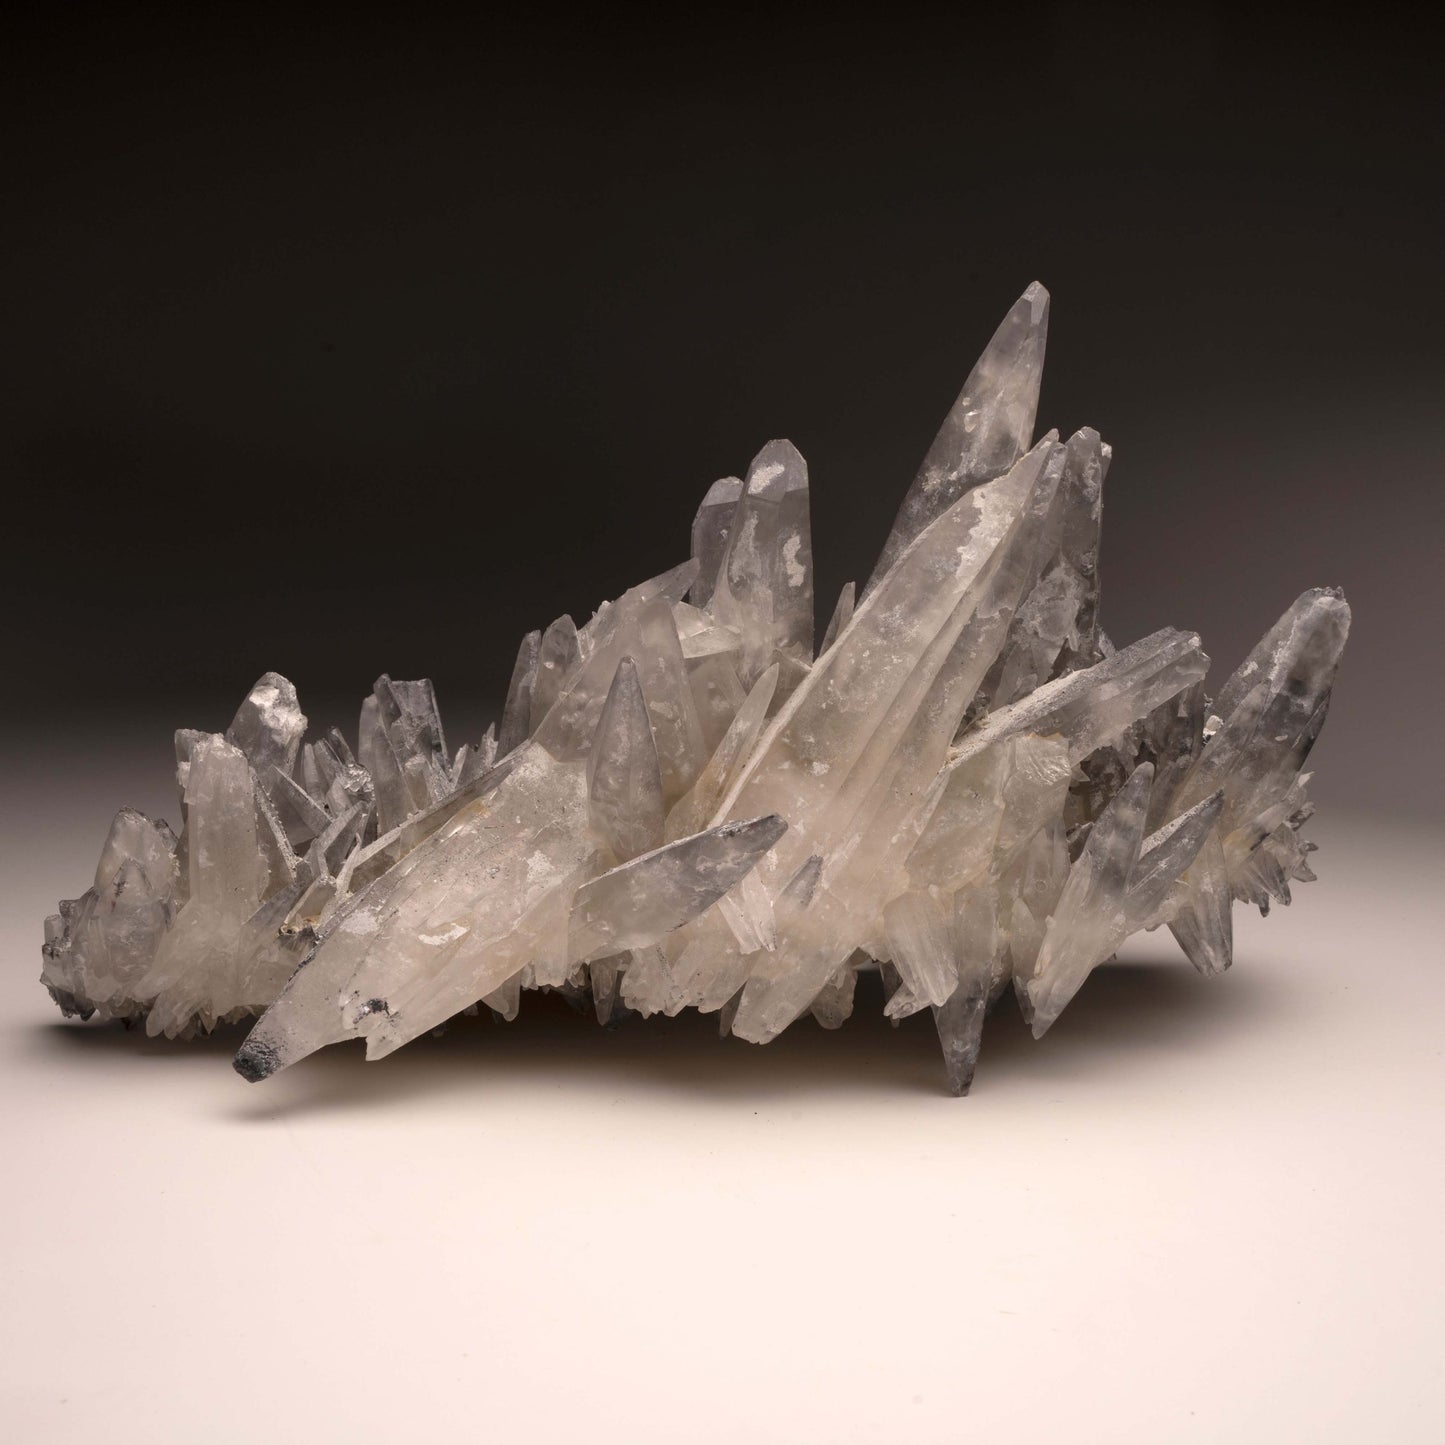 Hematite Dusted Calcite // Ver. 3